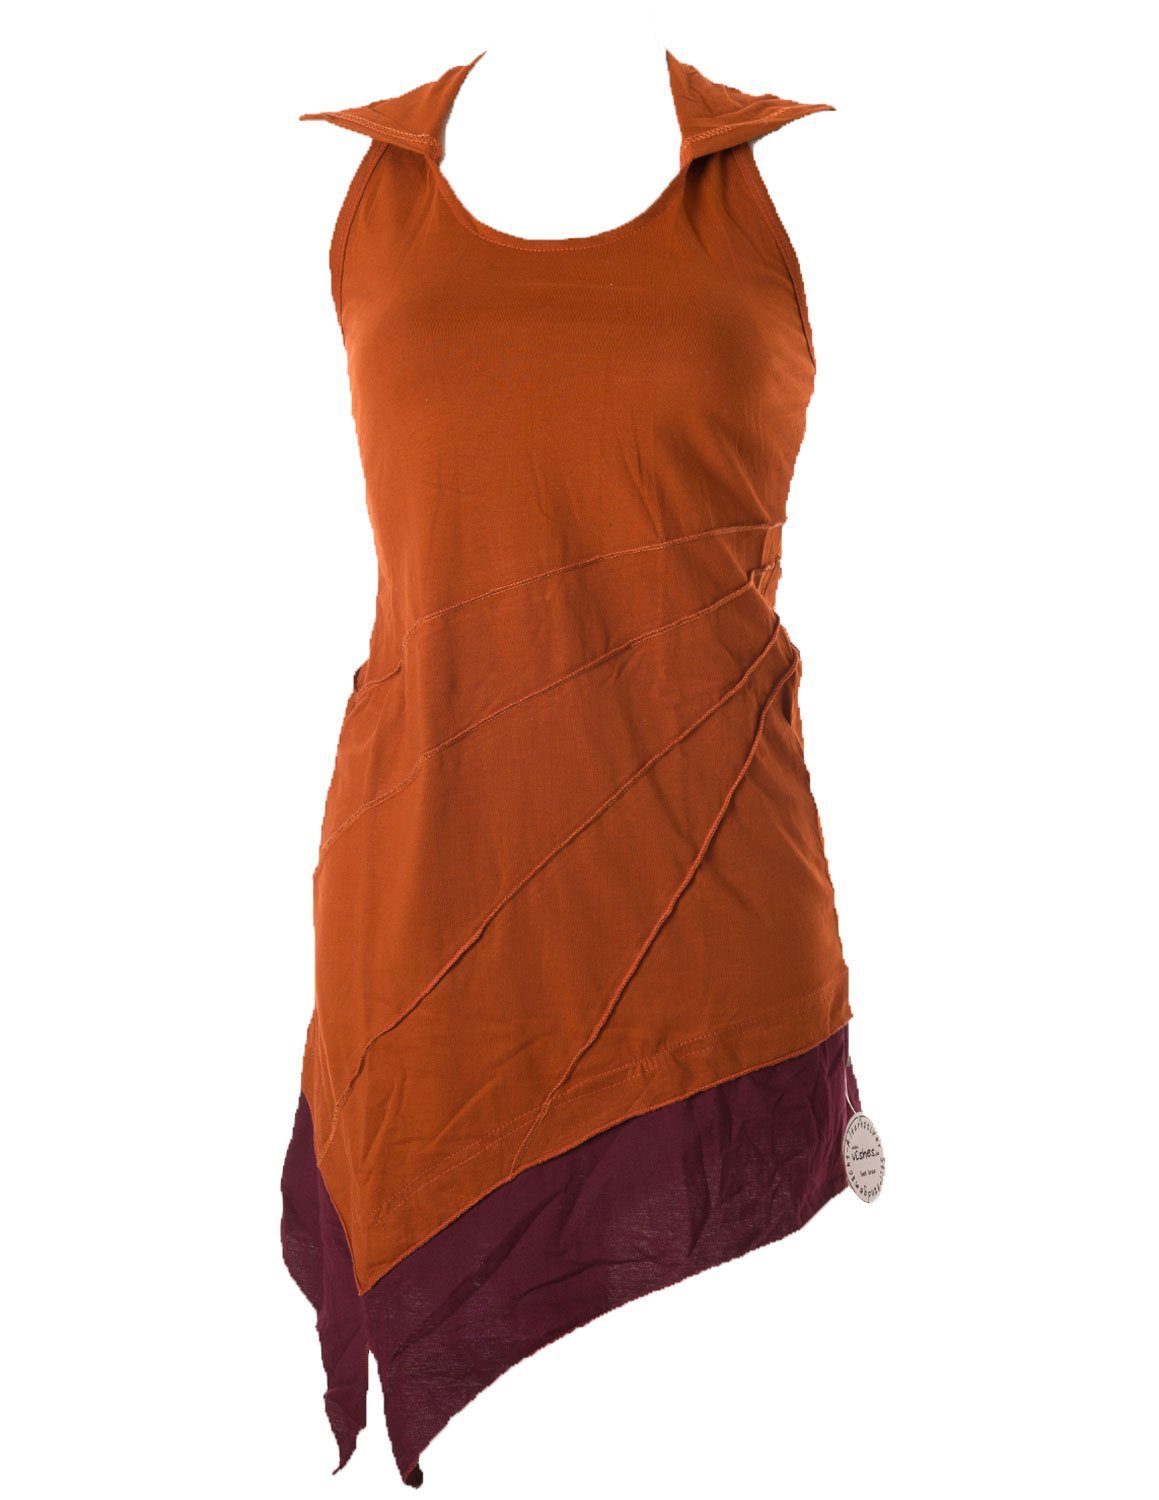 Vishes Kleid Neckholder Mini Style Boho Hippie, Neckholderkleid Goa, Zipfelkleid zweifarbig Elfen orange